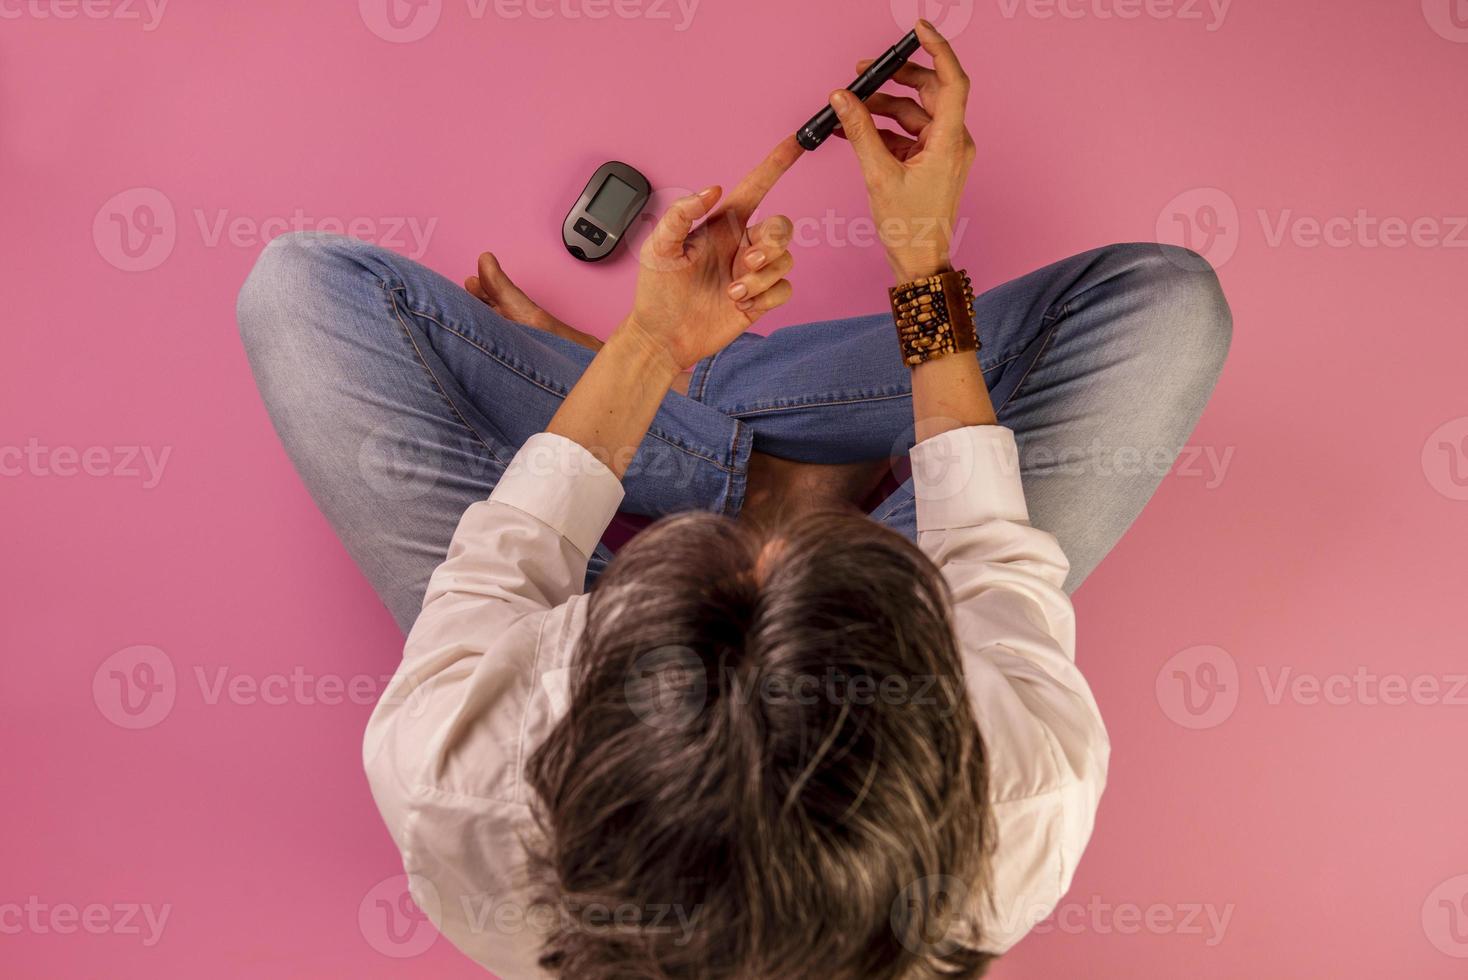 mulher diabética sentada no chão usando dispositivos para medir a glicose no sangue foto